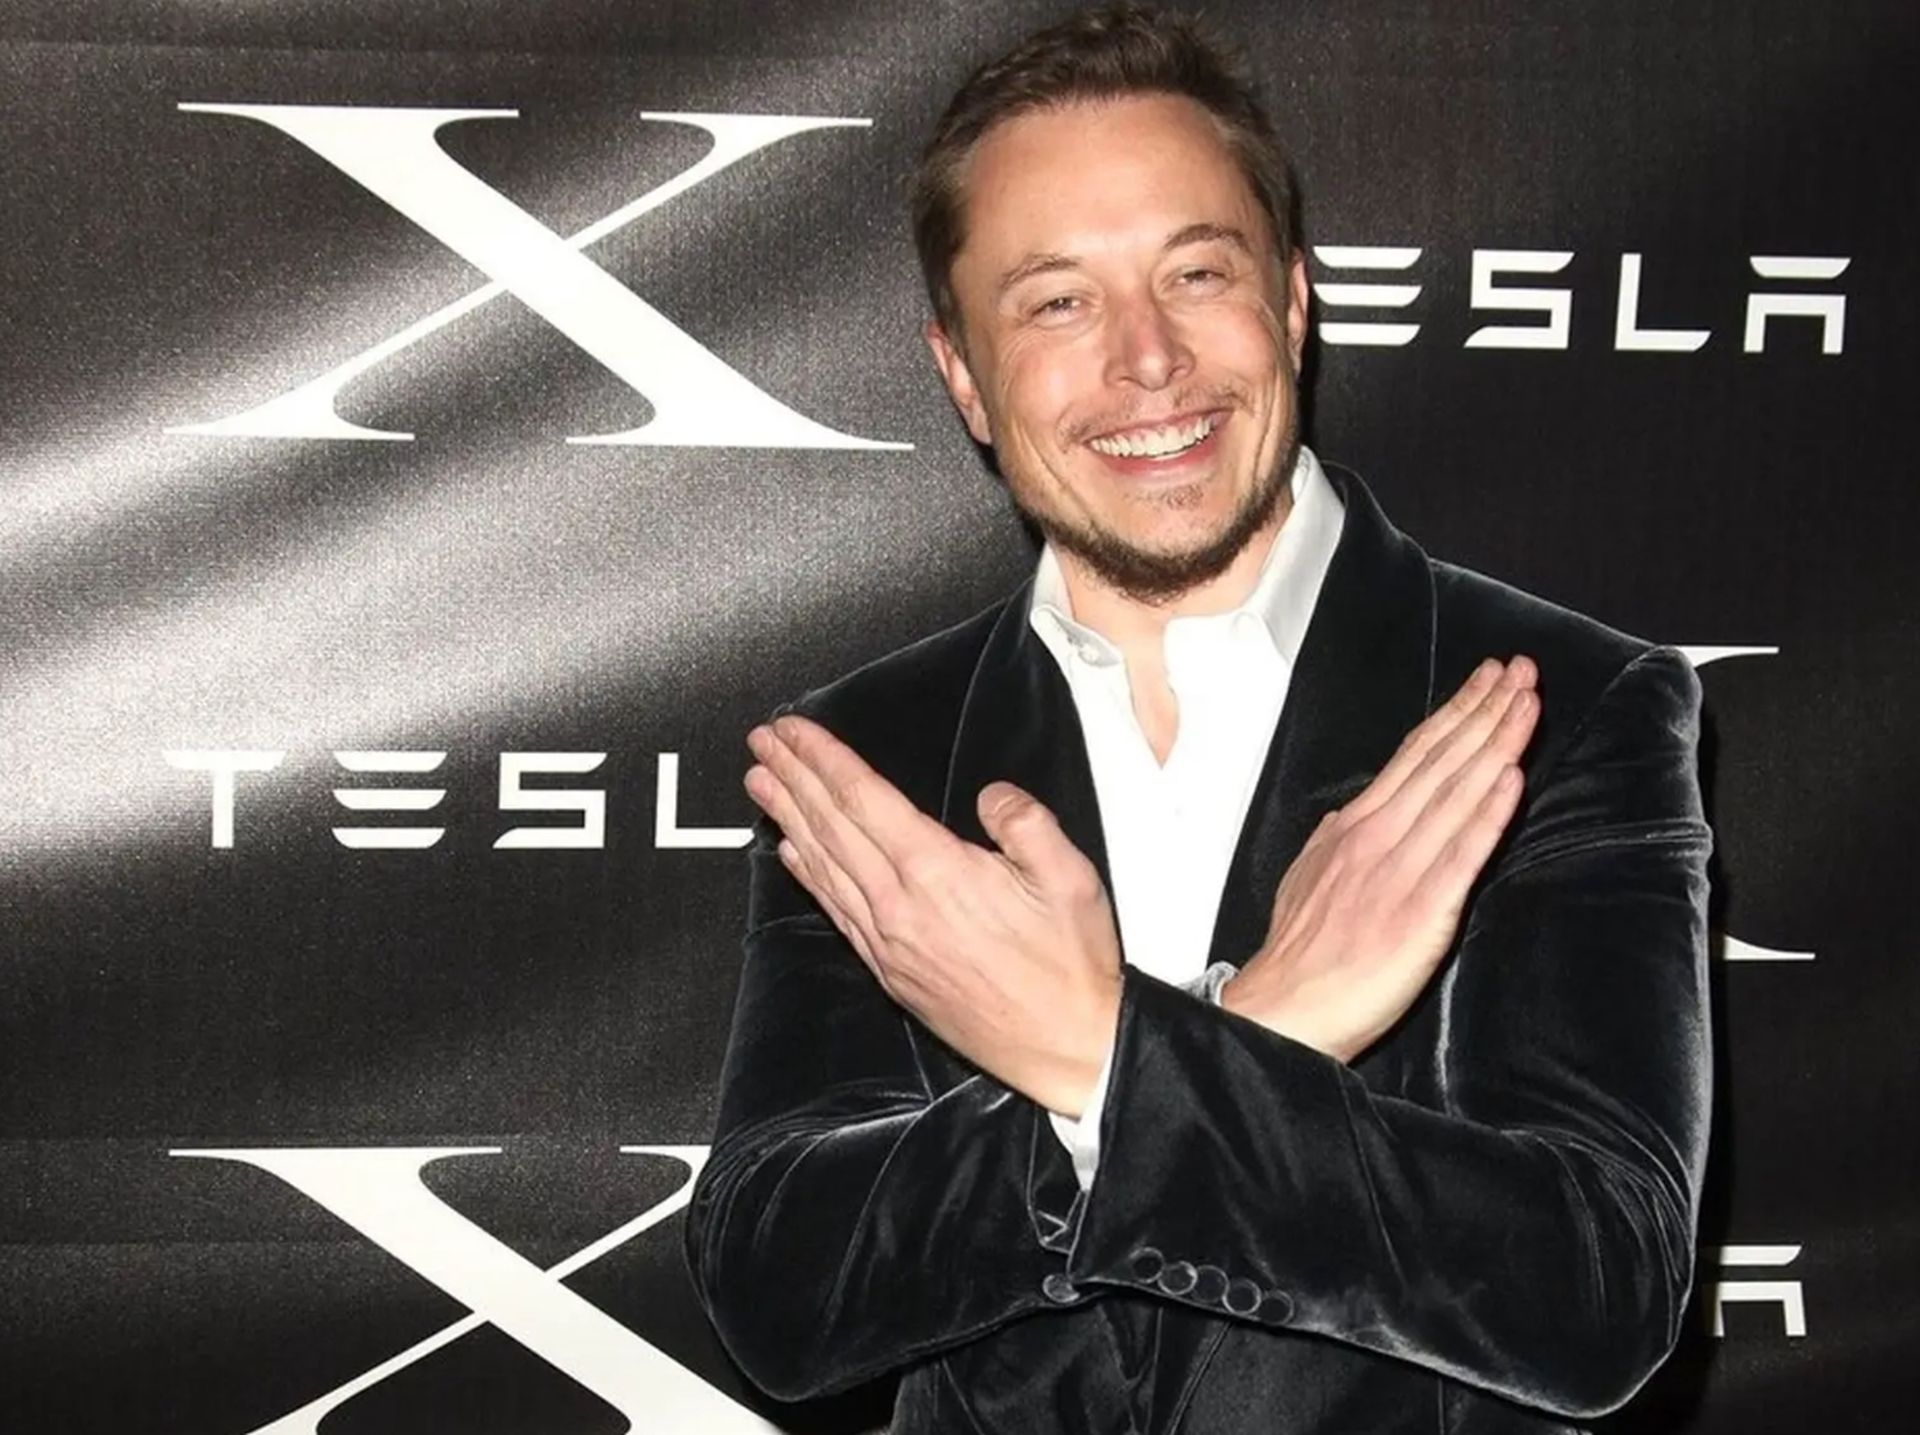 Elon Musk fined